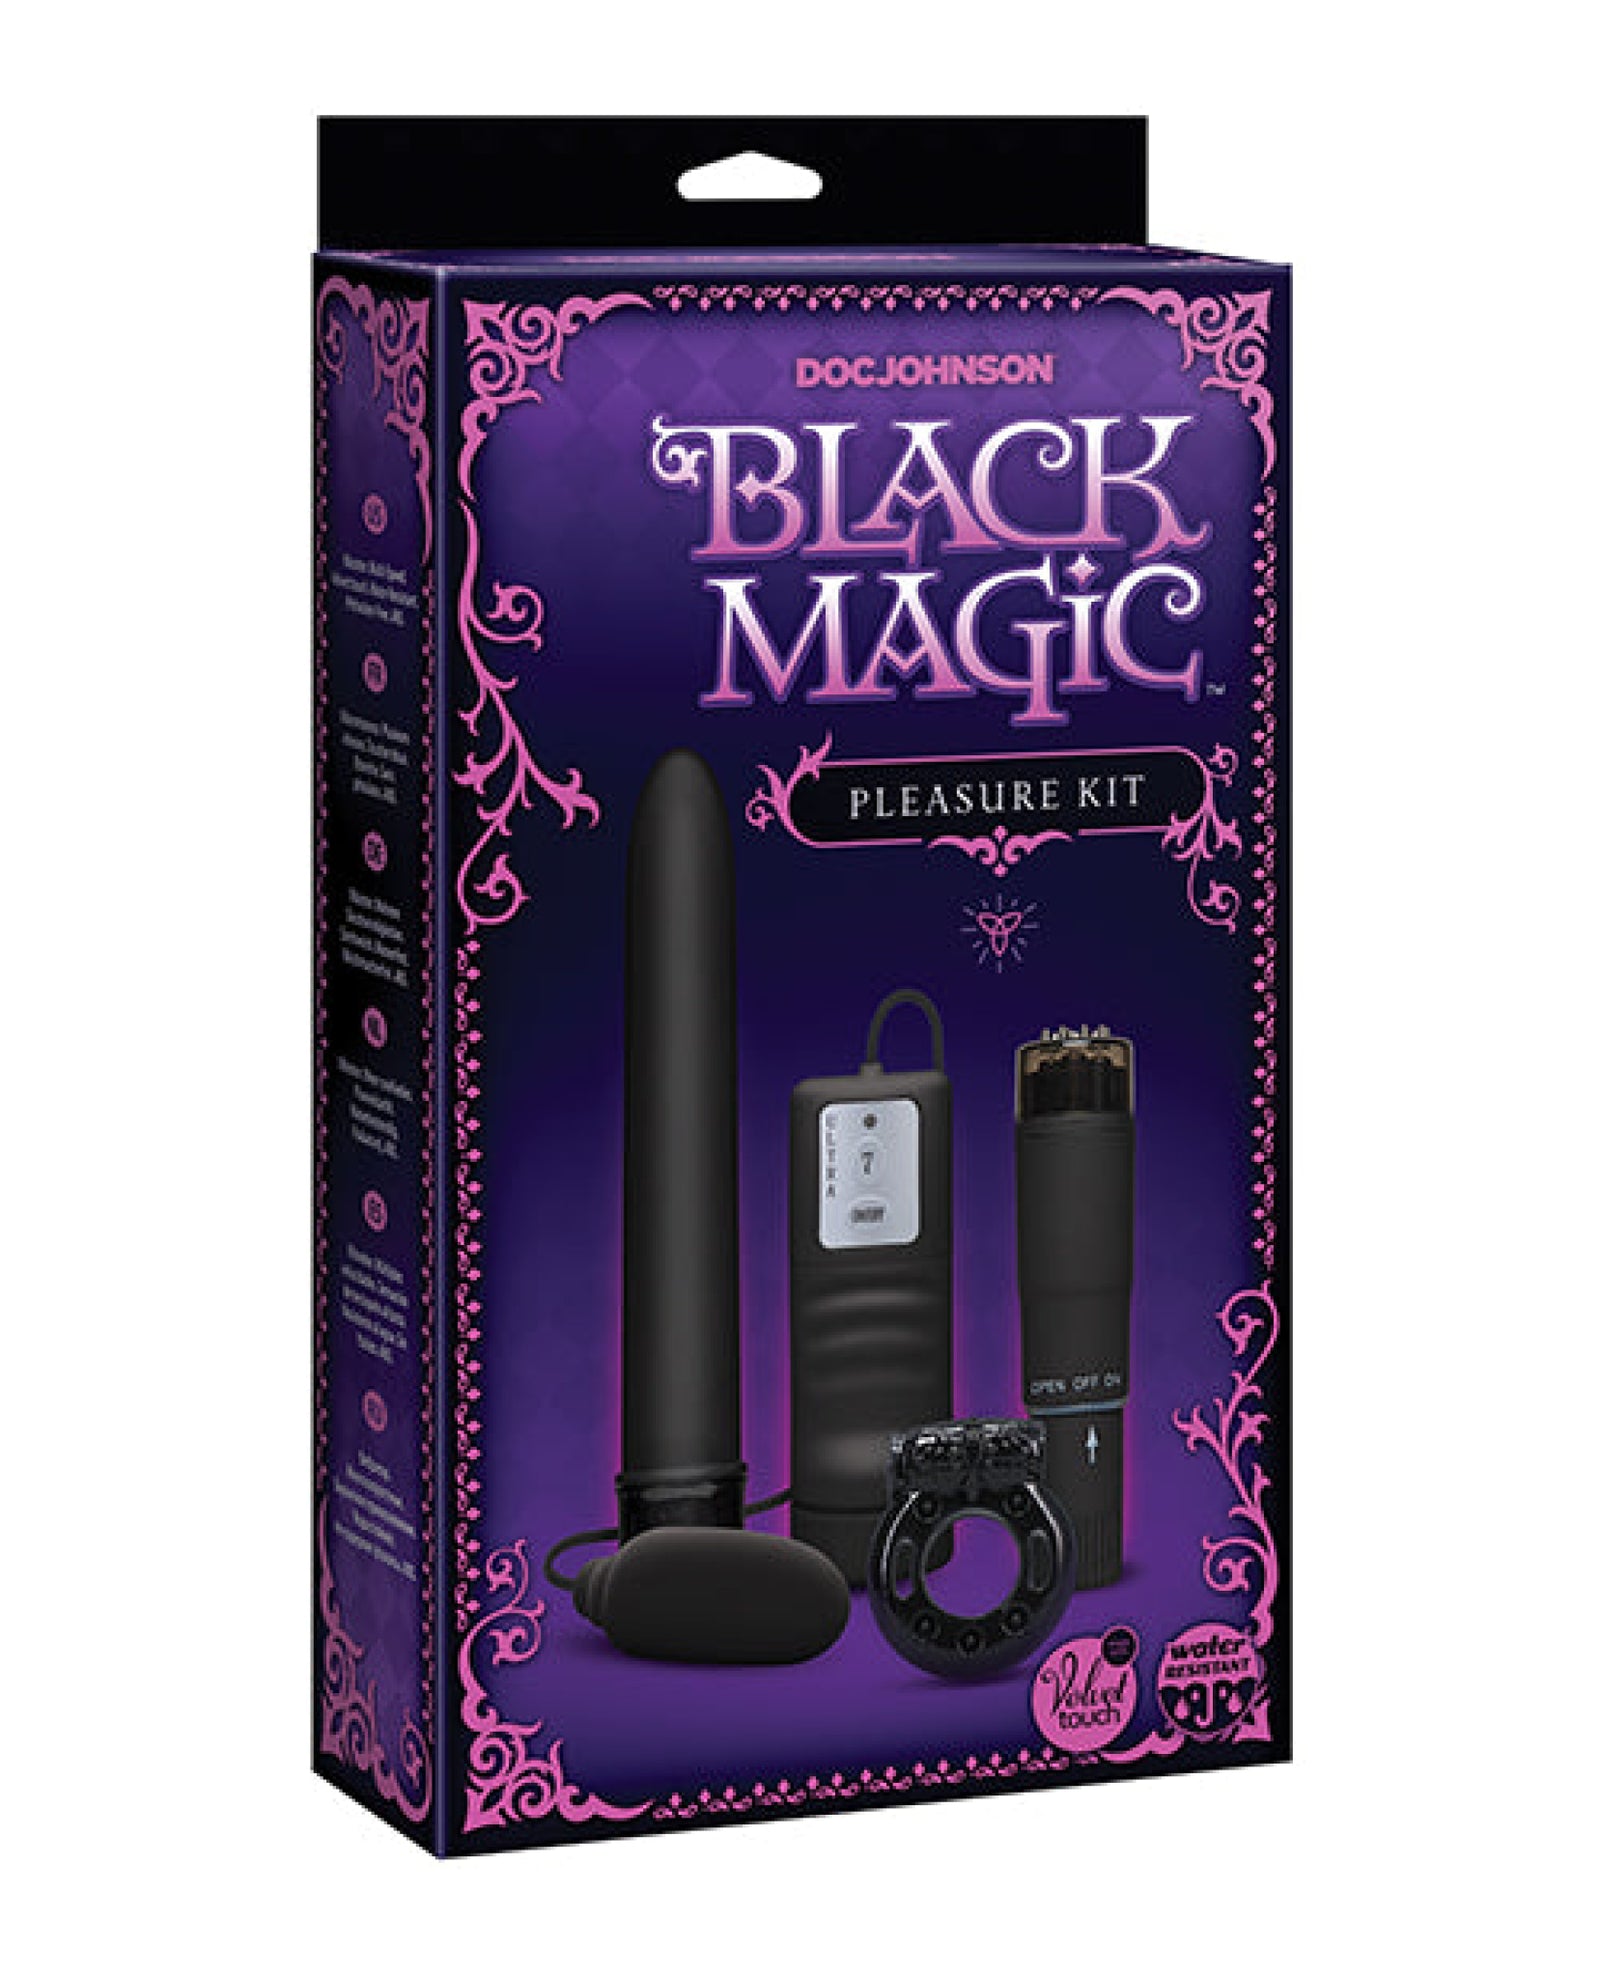 Black Magic Pleasure Kit - Black Doc Johnson